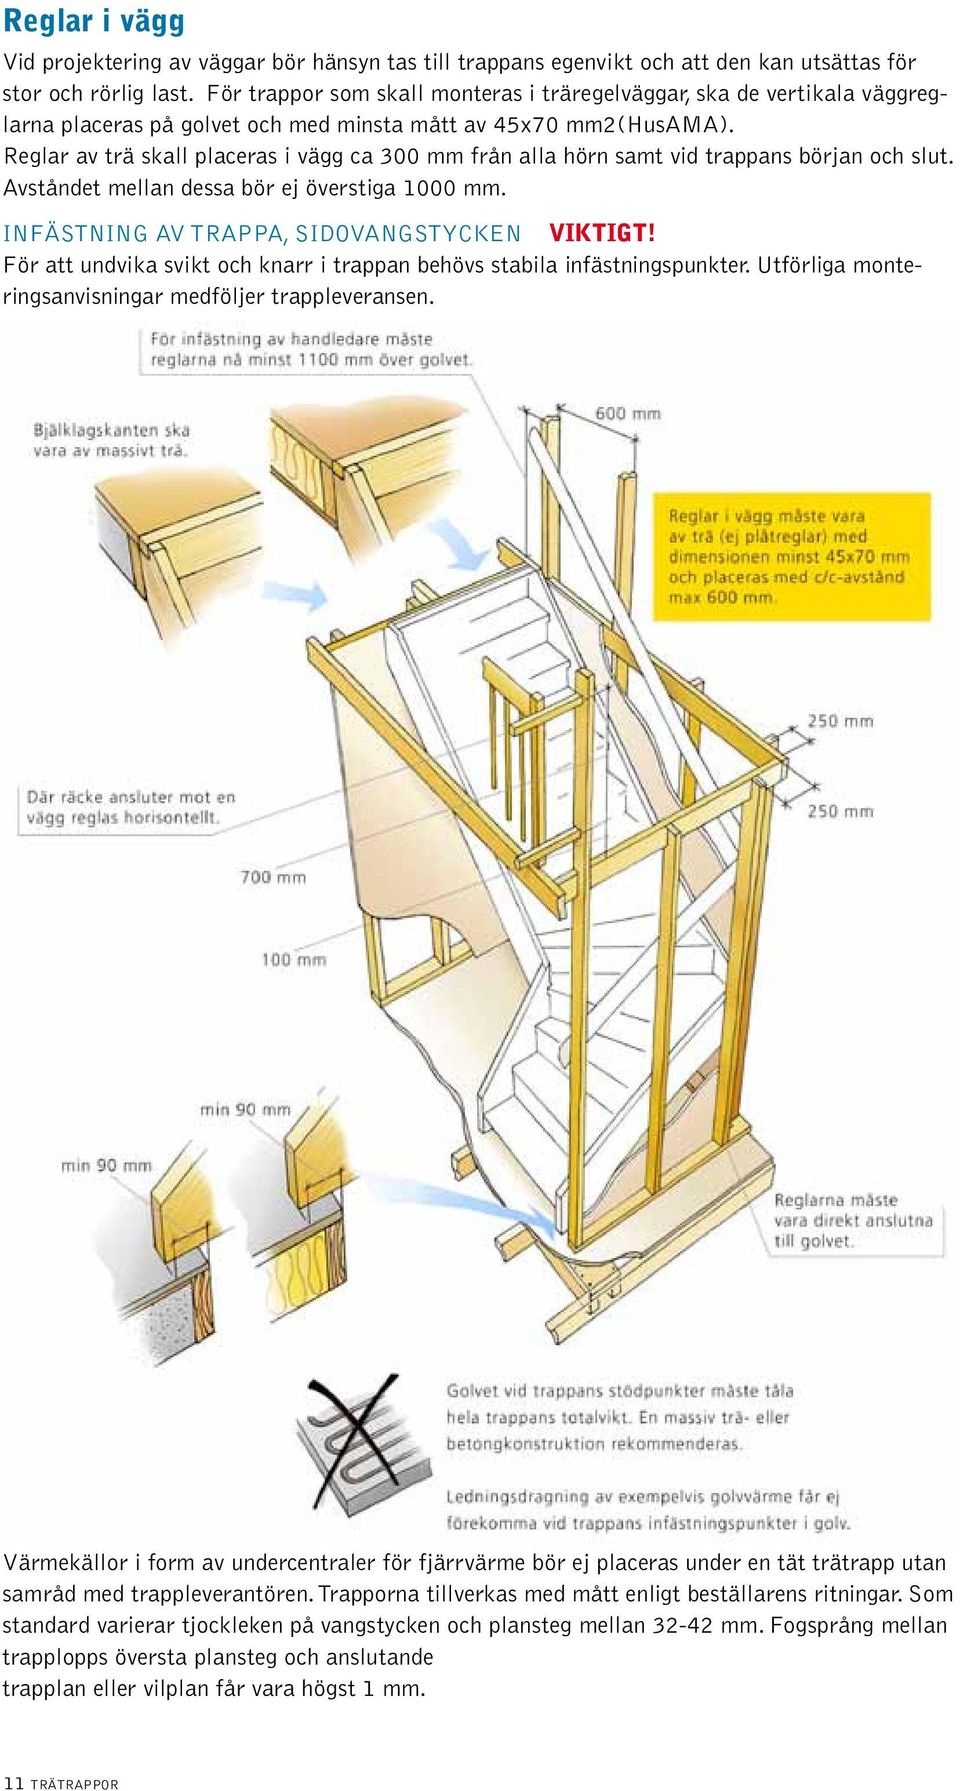 Reglar av trä skall placeras i vägg ca 300 mm från alla hörn samt vid trappans början och slut. Avståndet mellan dessa bör ej överstiga 1000 mm. Infästning av trappa, sidovangstycken VIKTIGT!